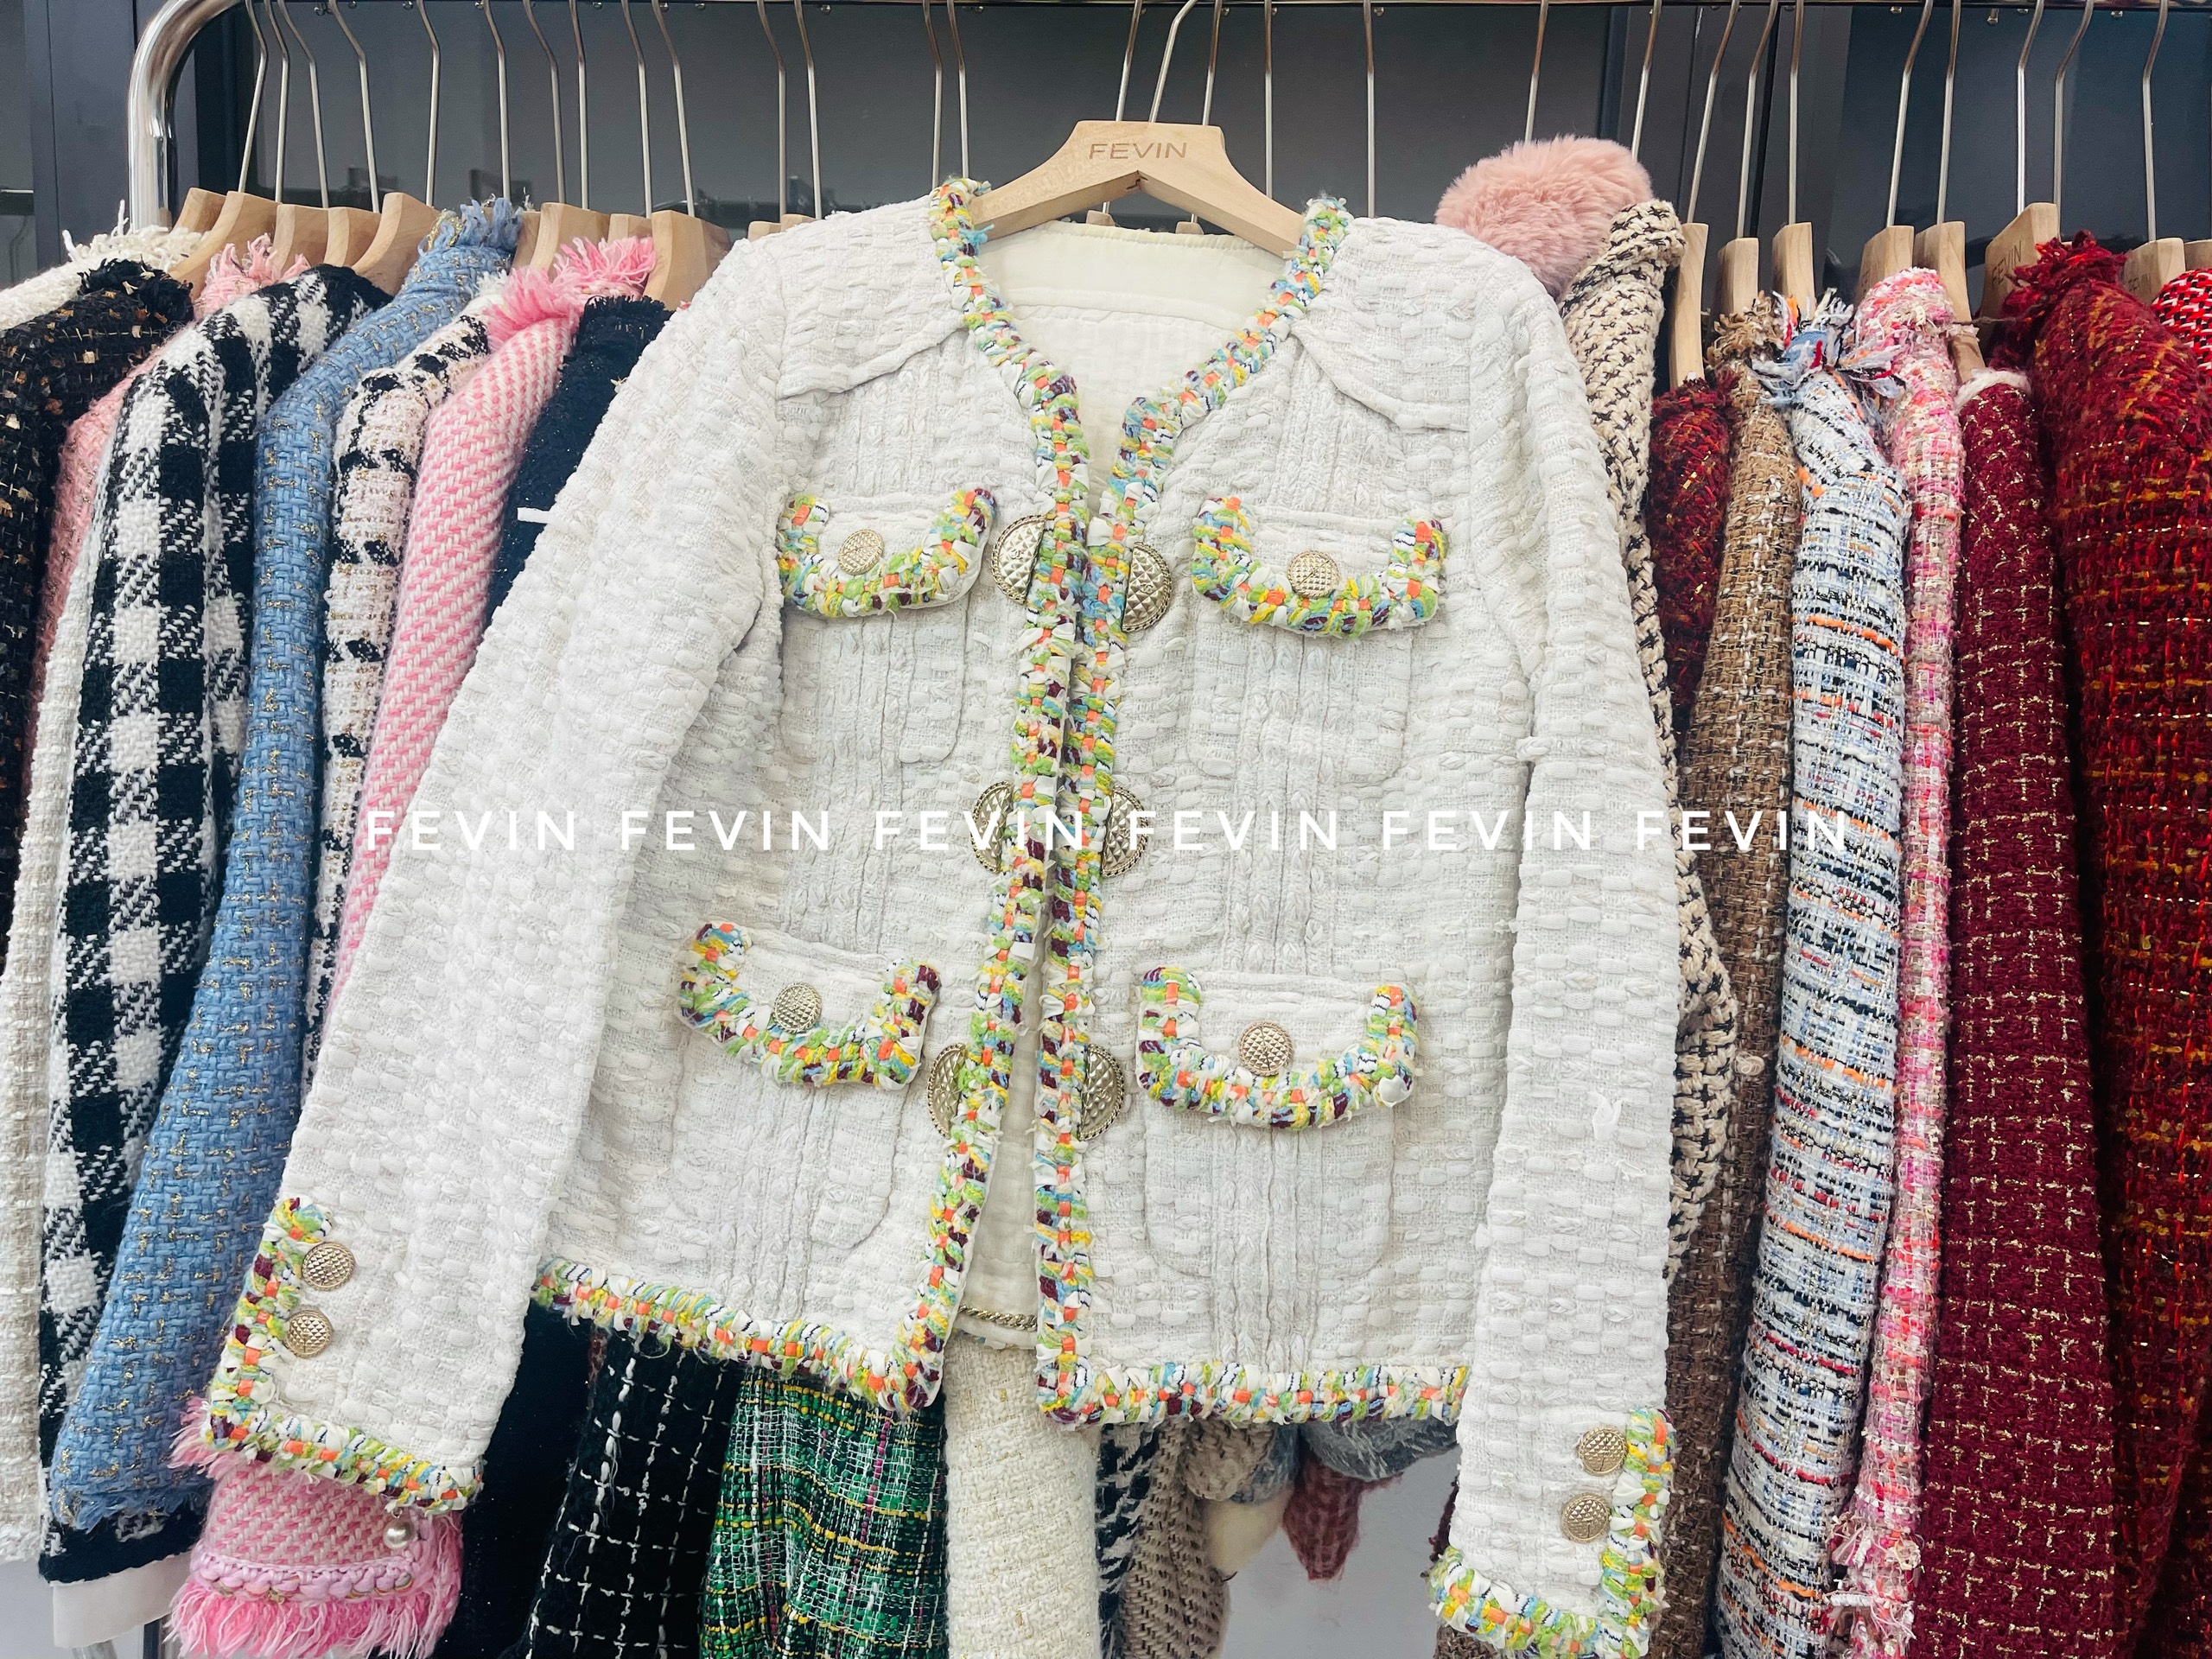 Áo Khoác Vải Dạ Tweed Hàn Quốc - Tổng kho hàng thùng Miền Bắc